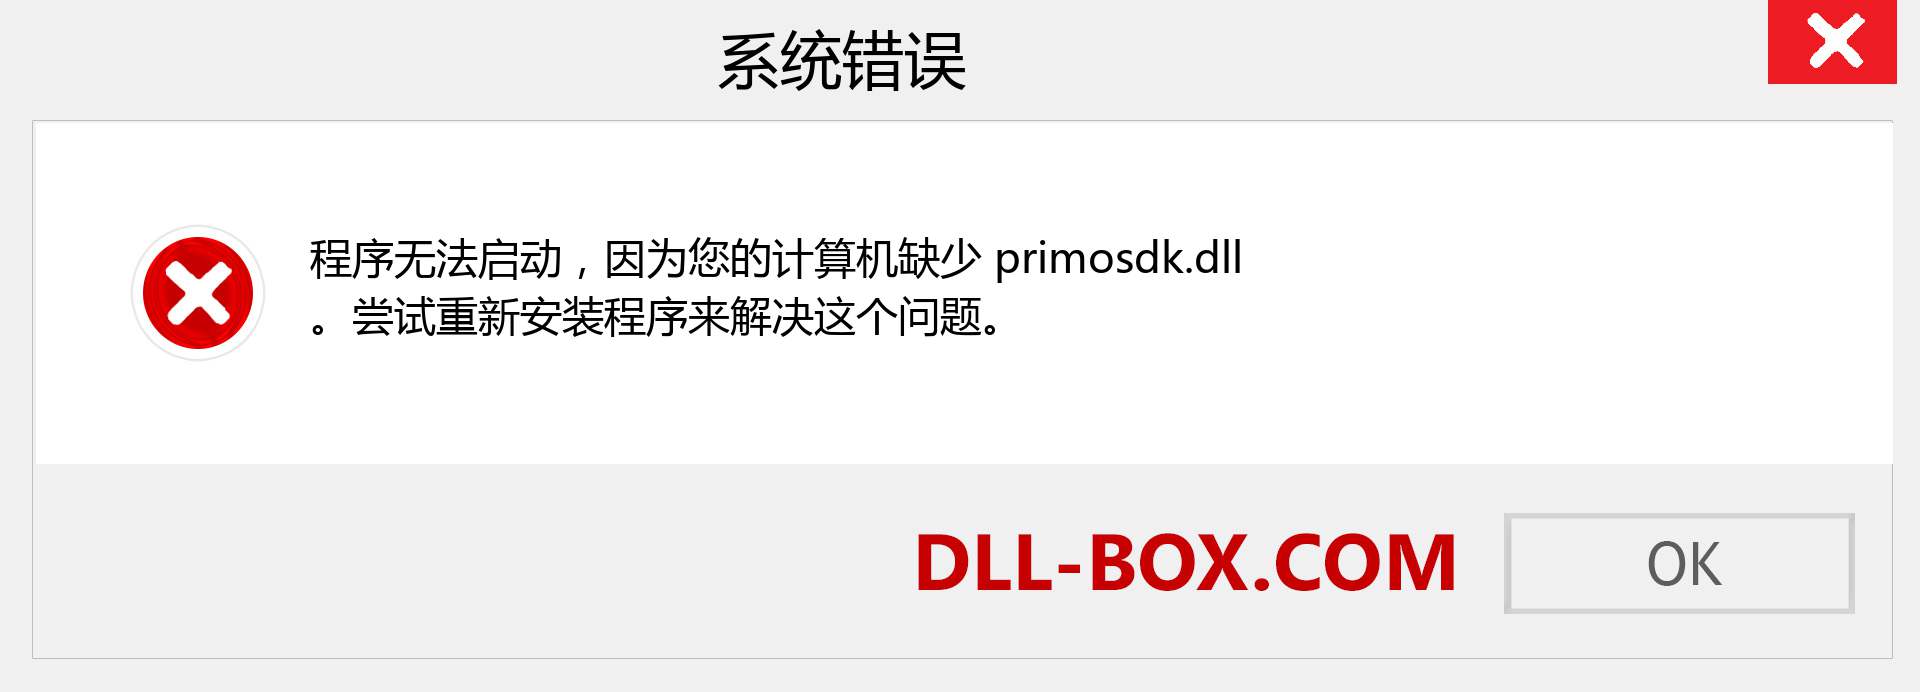 primosdk.dll 文件丢失？。 适用于 Windows 7、8、10 的下载 - 修复 Windows、照片、图像上的 primosdk dll 丢失错误